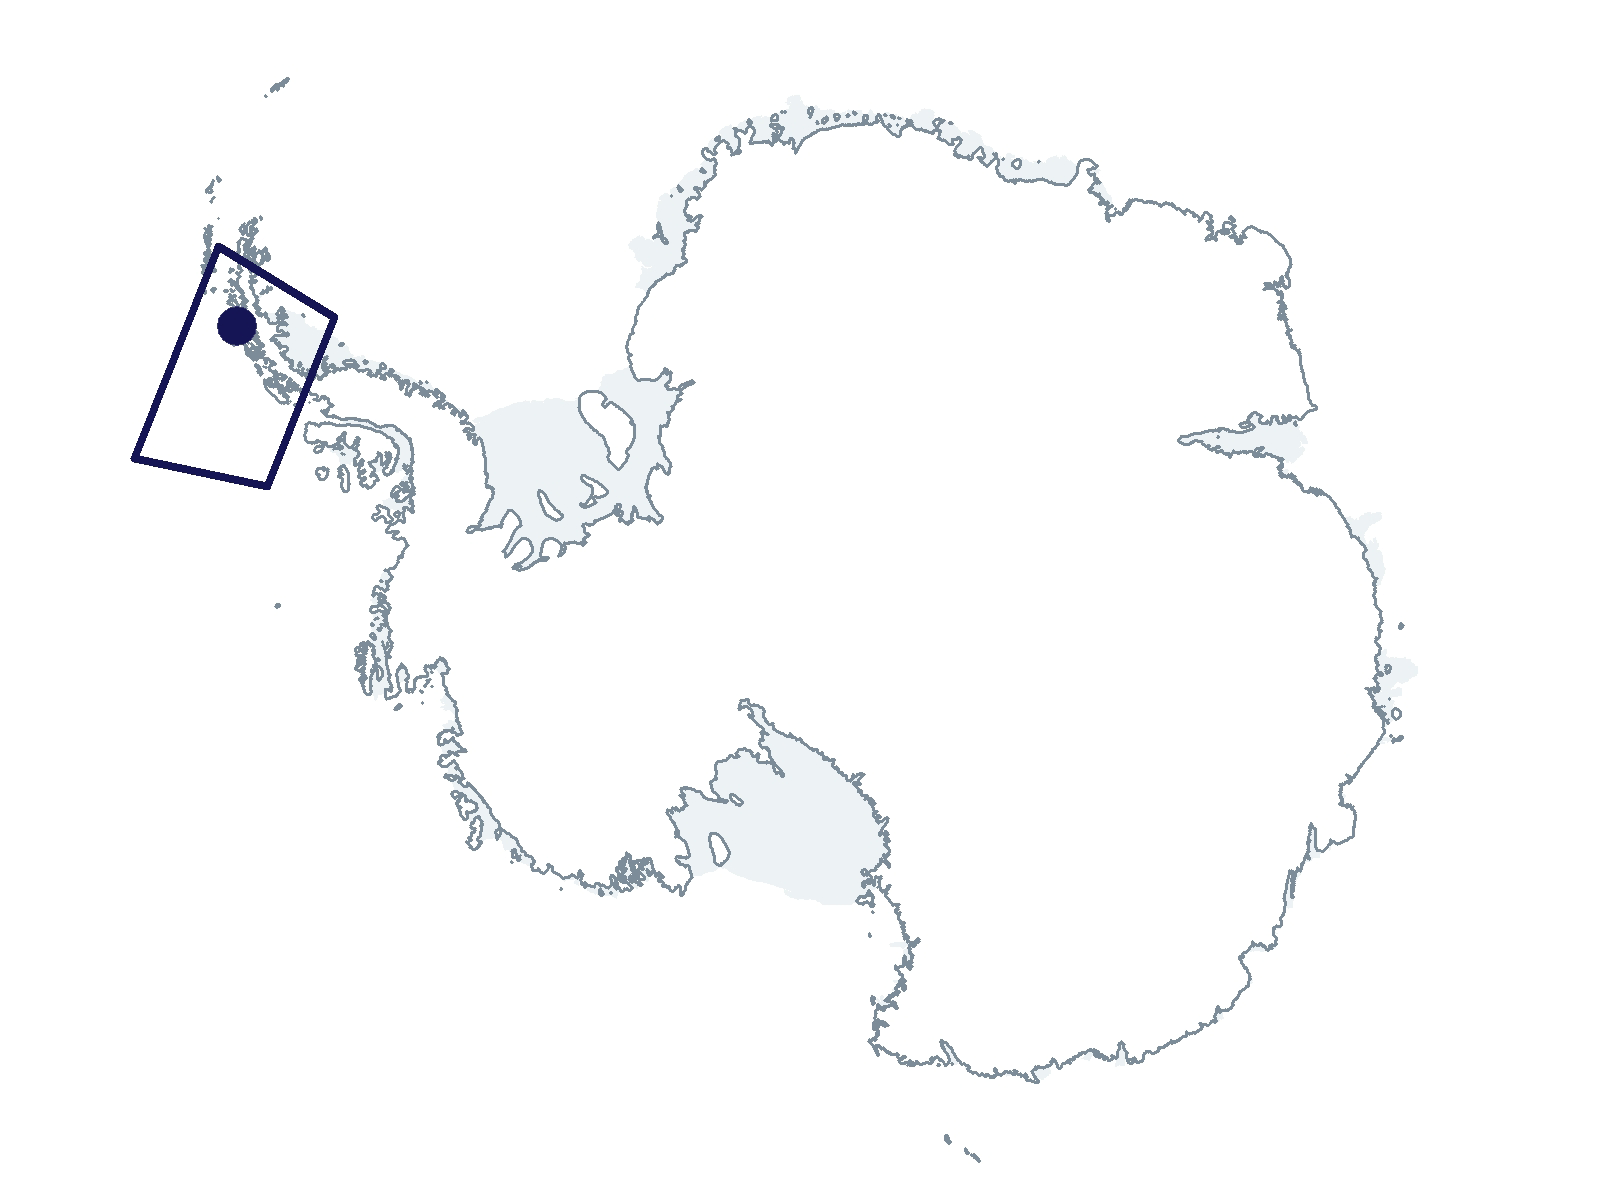 C-019-L/P Research Location(s): West Antarctic Peninsula